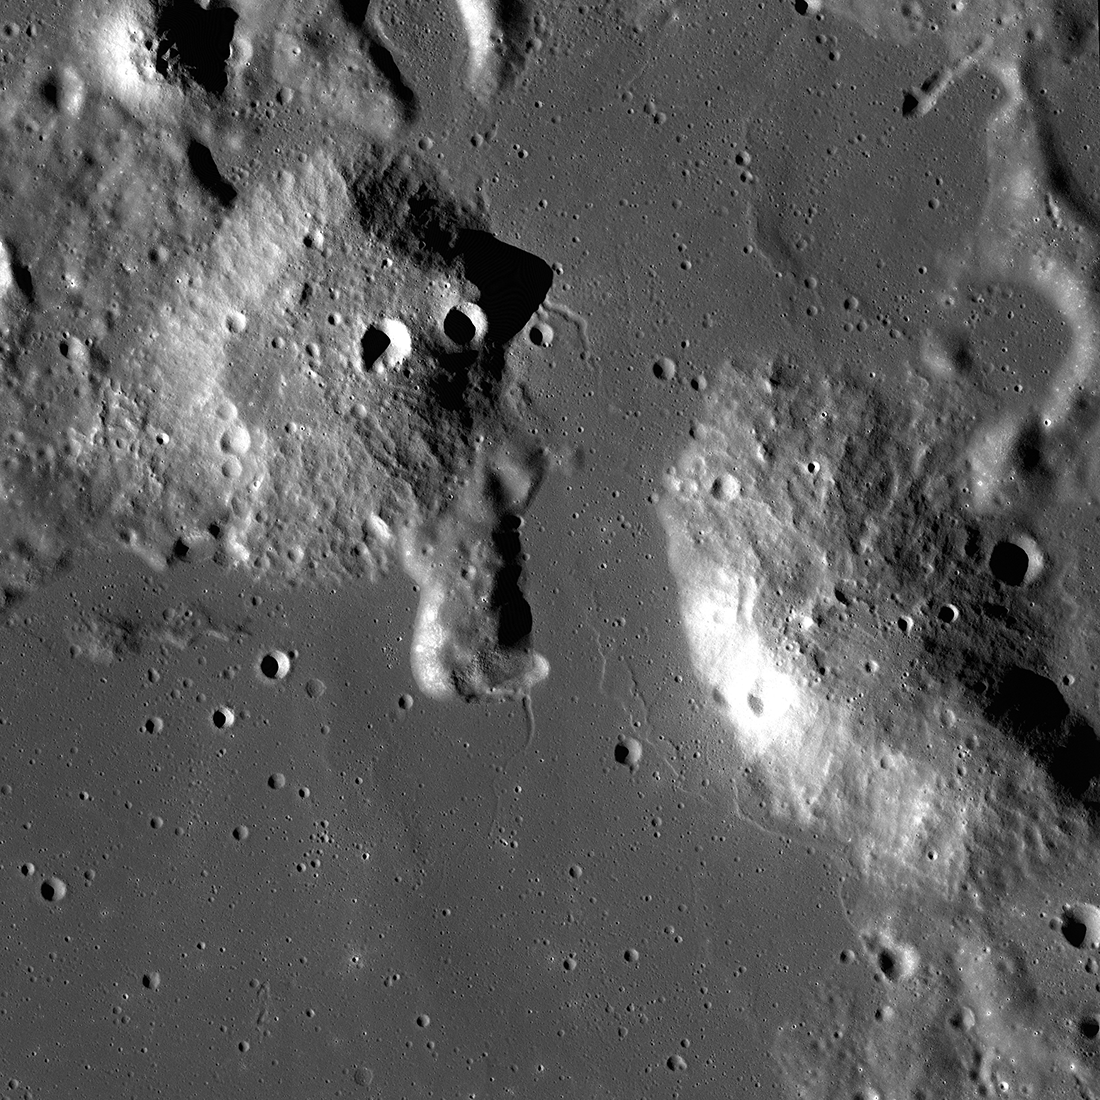 Artemis science on Moon mission